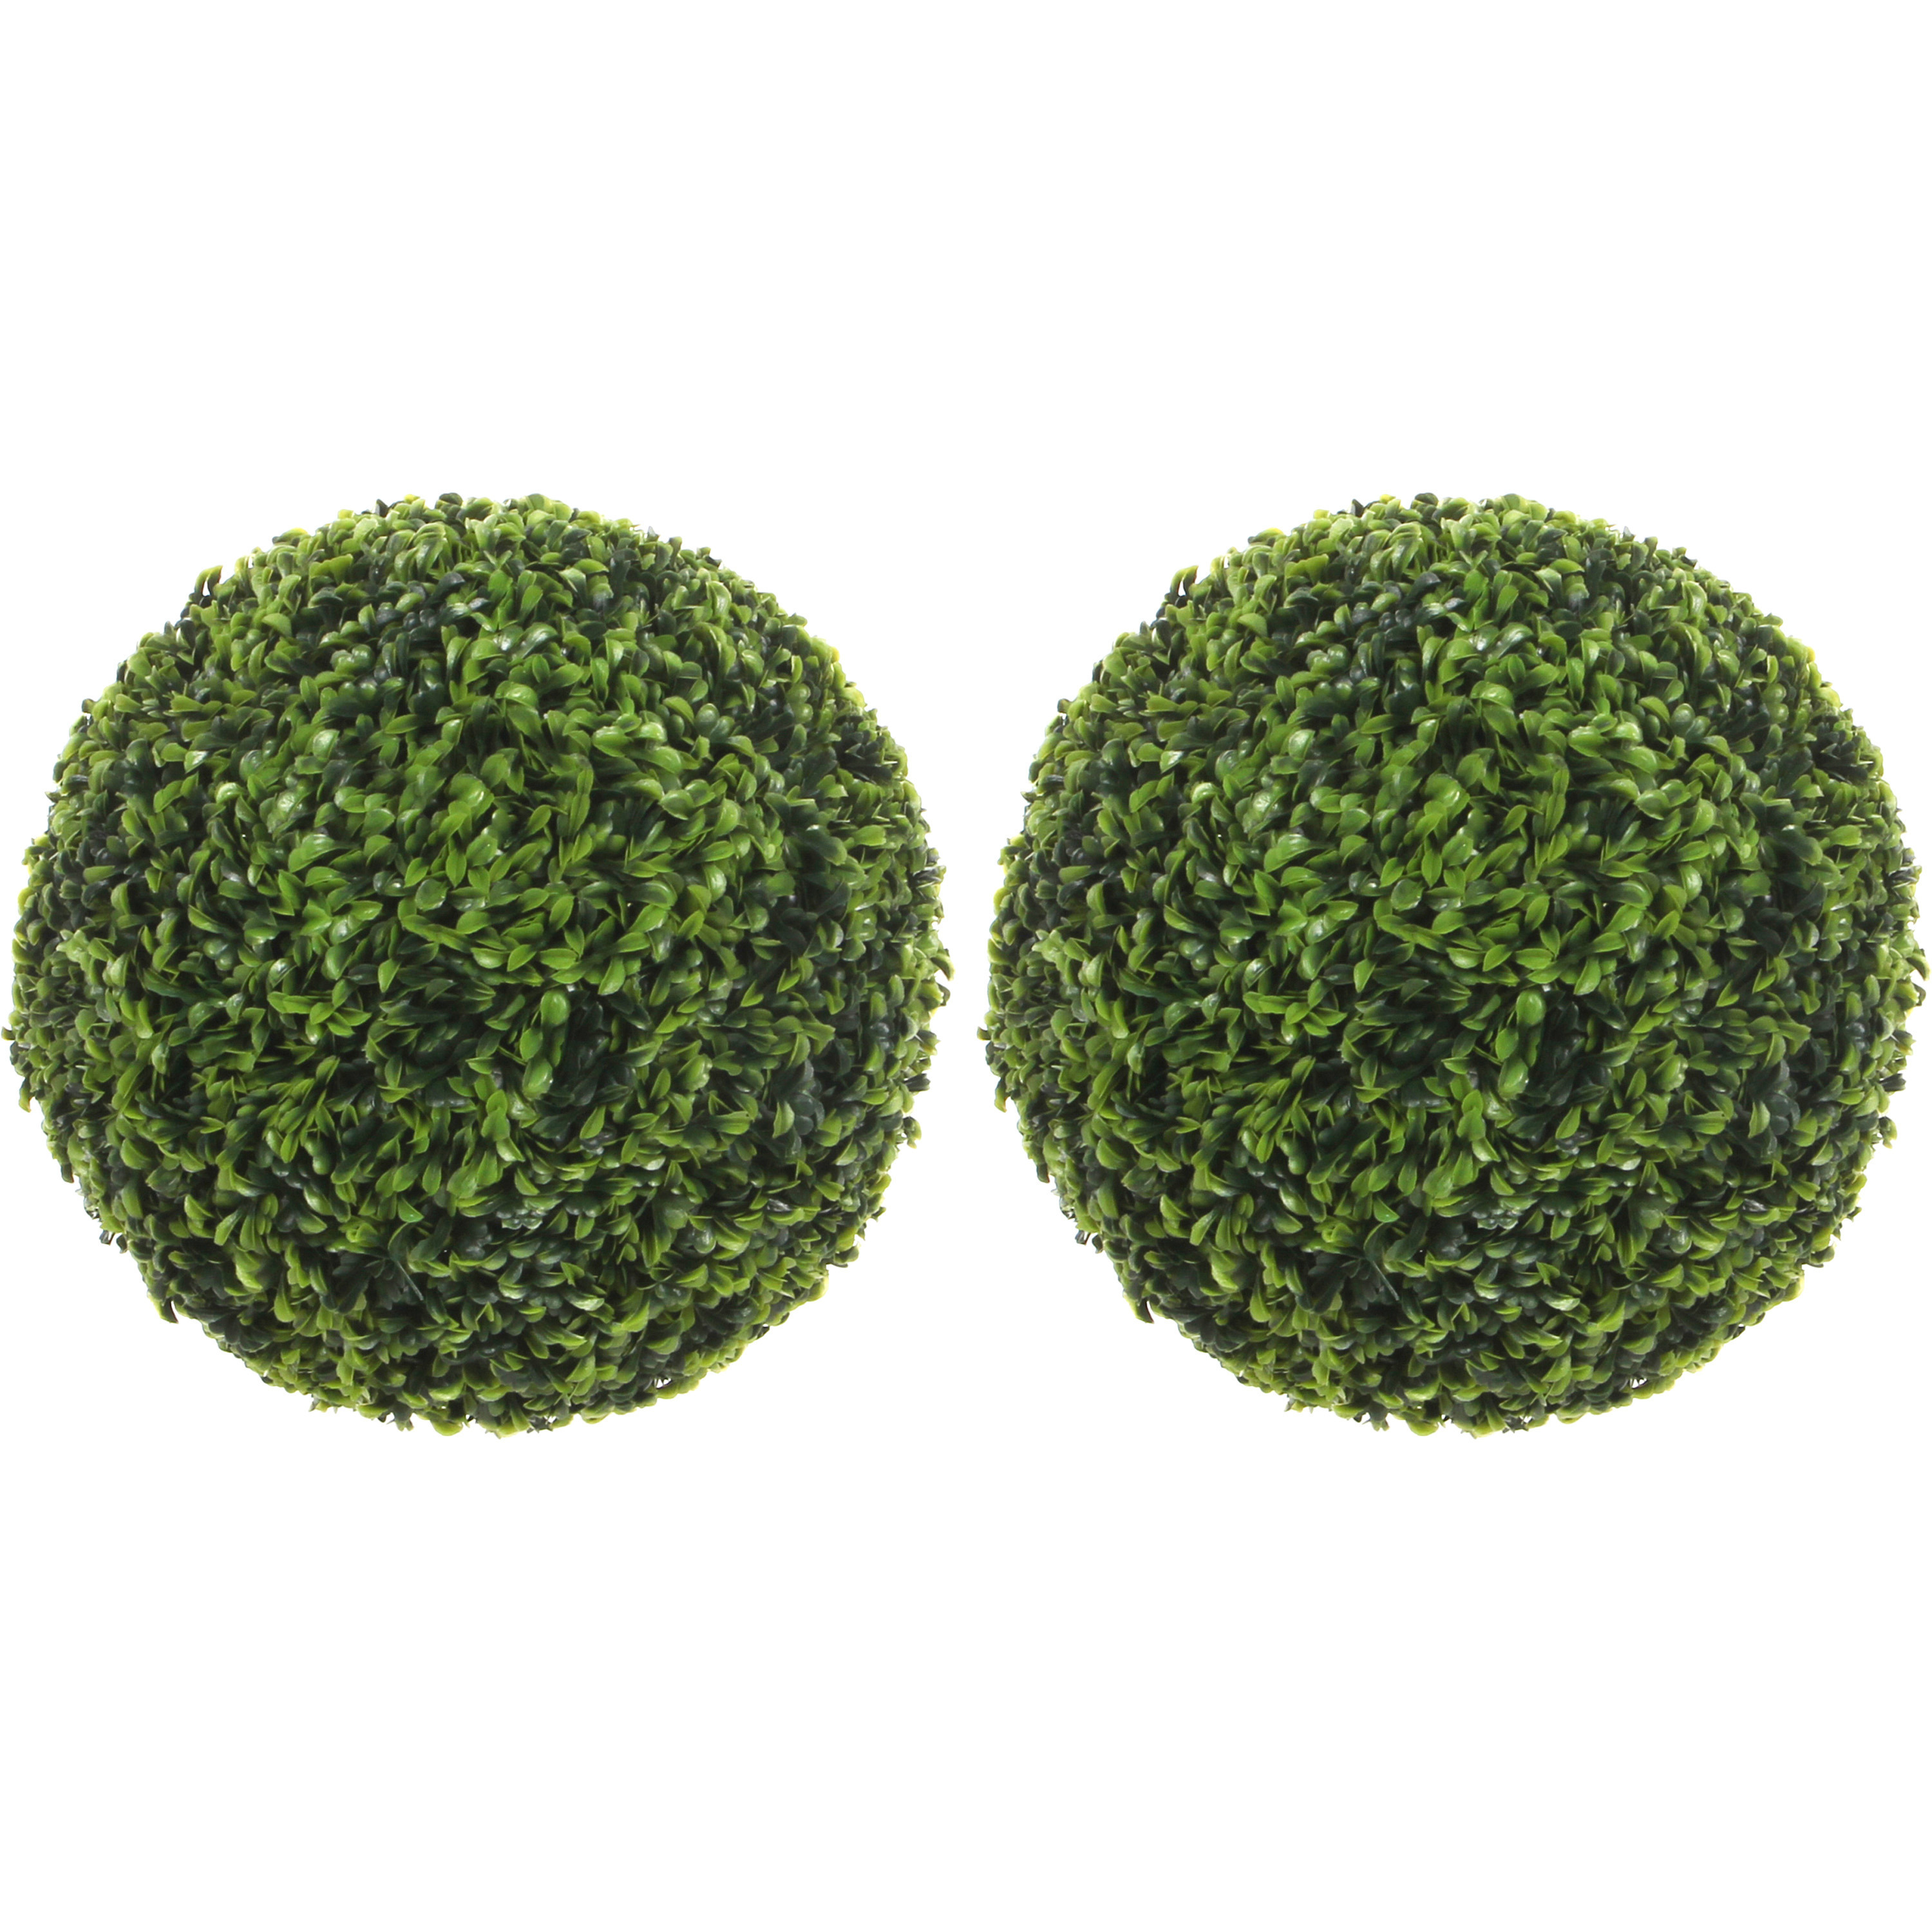 Mica decorations Buxus bol groen - 2 st - D50 cm - Kunstplant buiten/binnen - UV-bestendig